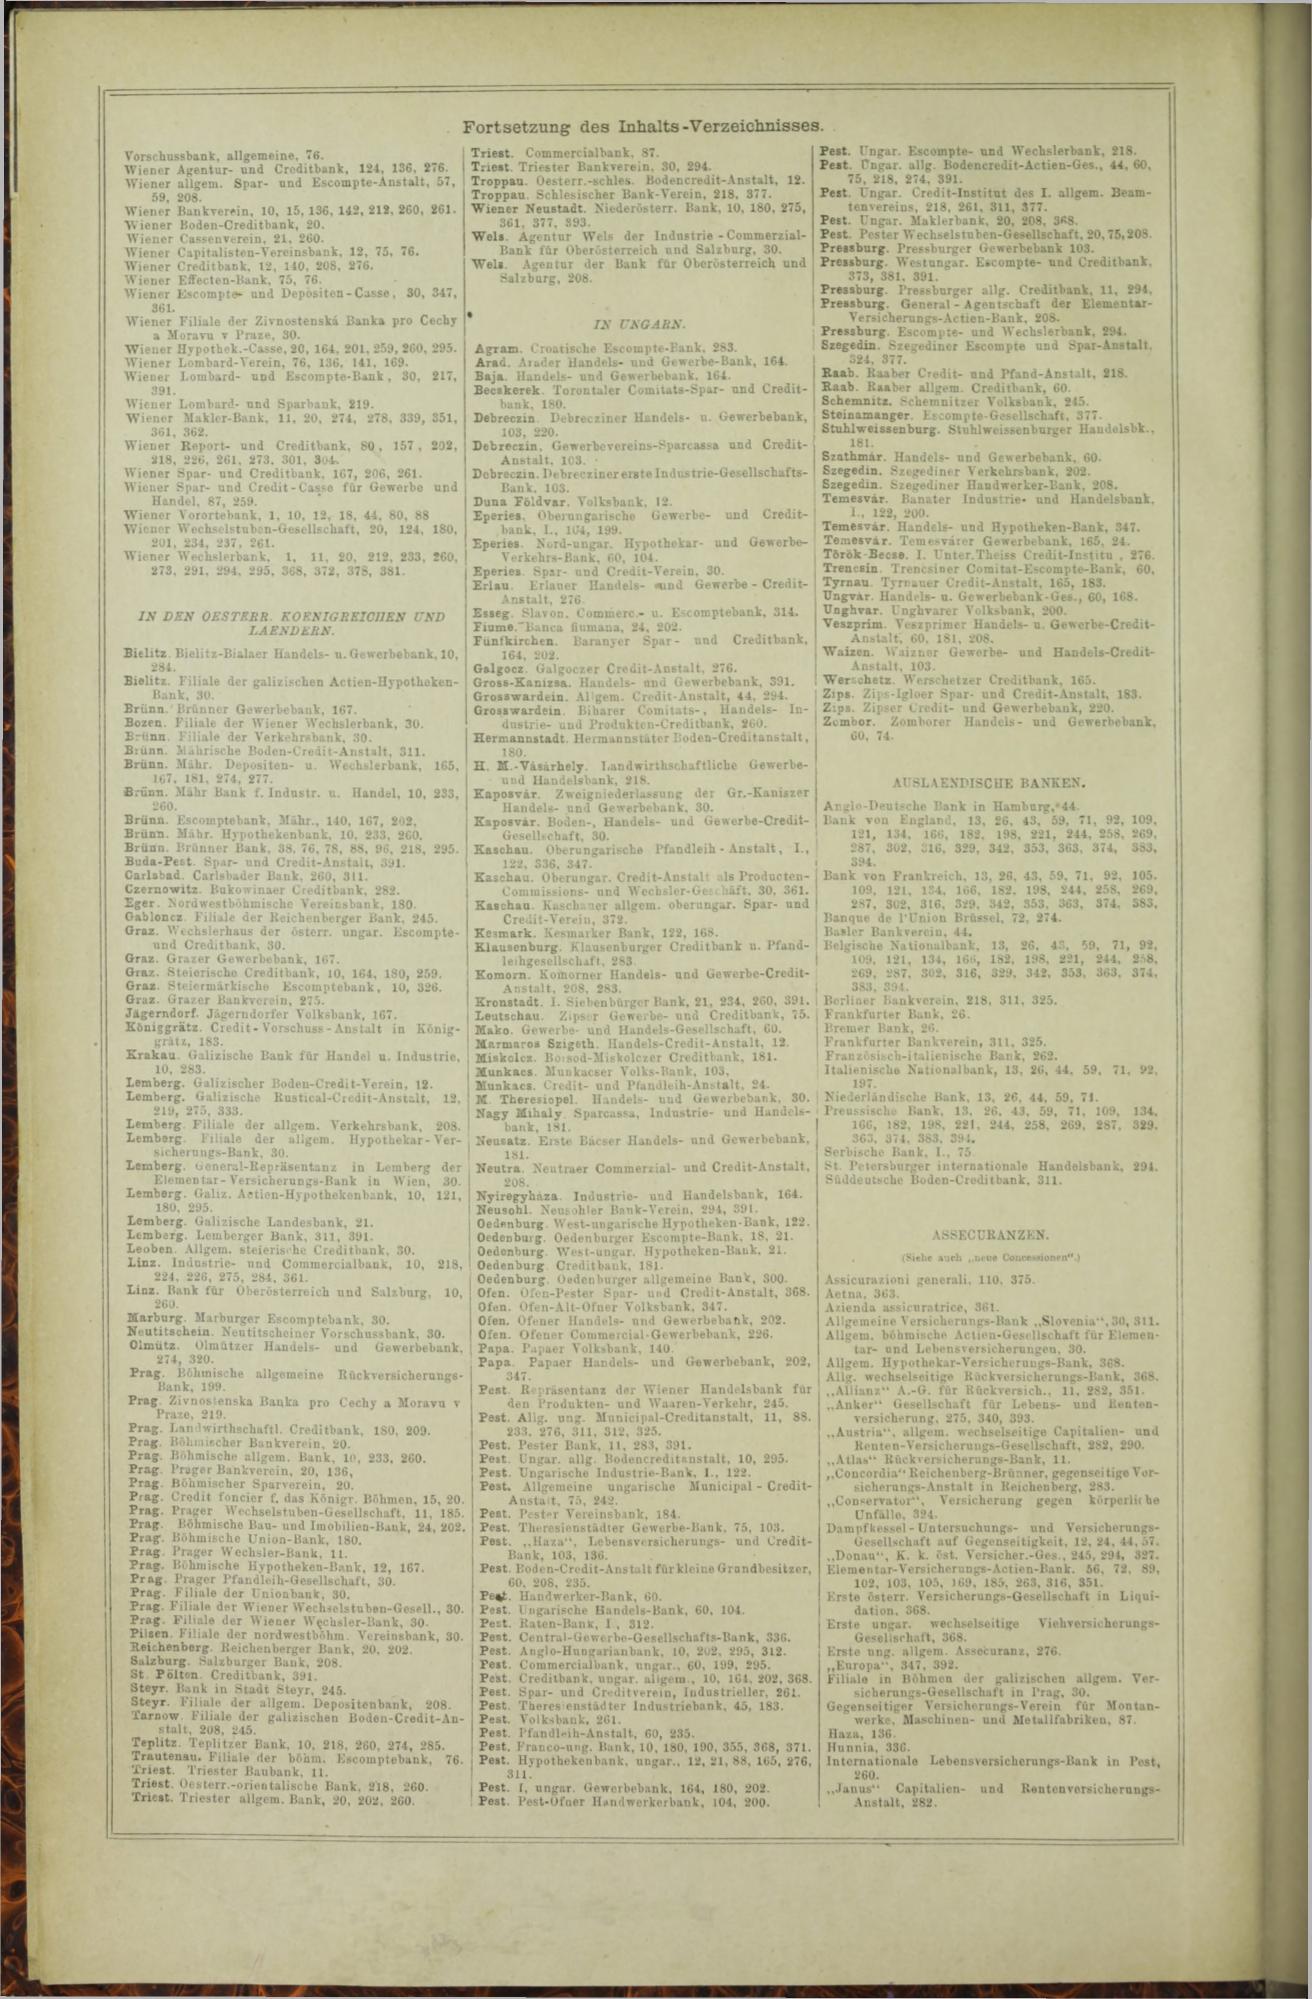 Der Tresor 29.01.1873 - Seite 20